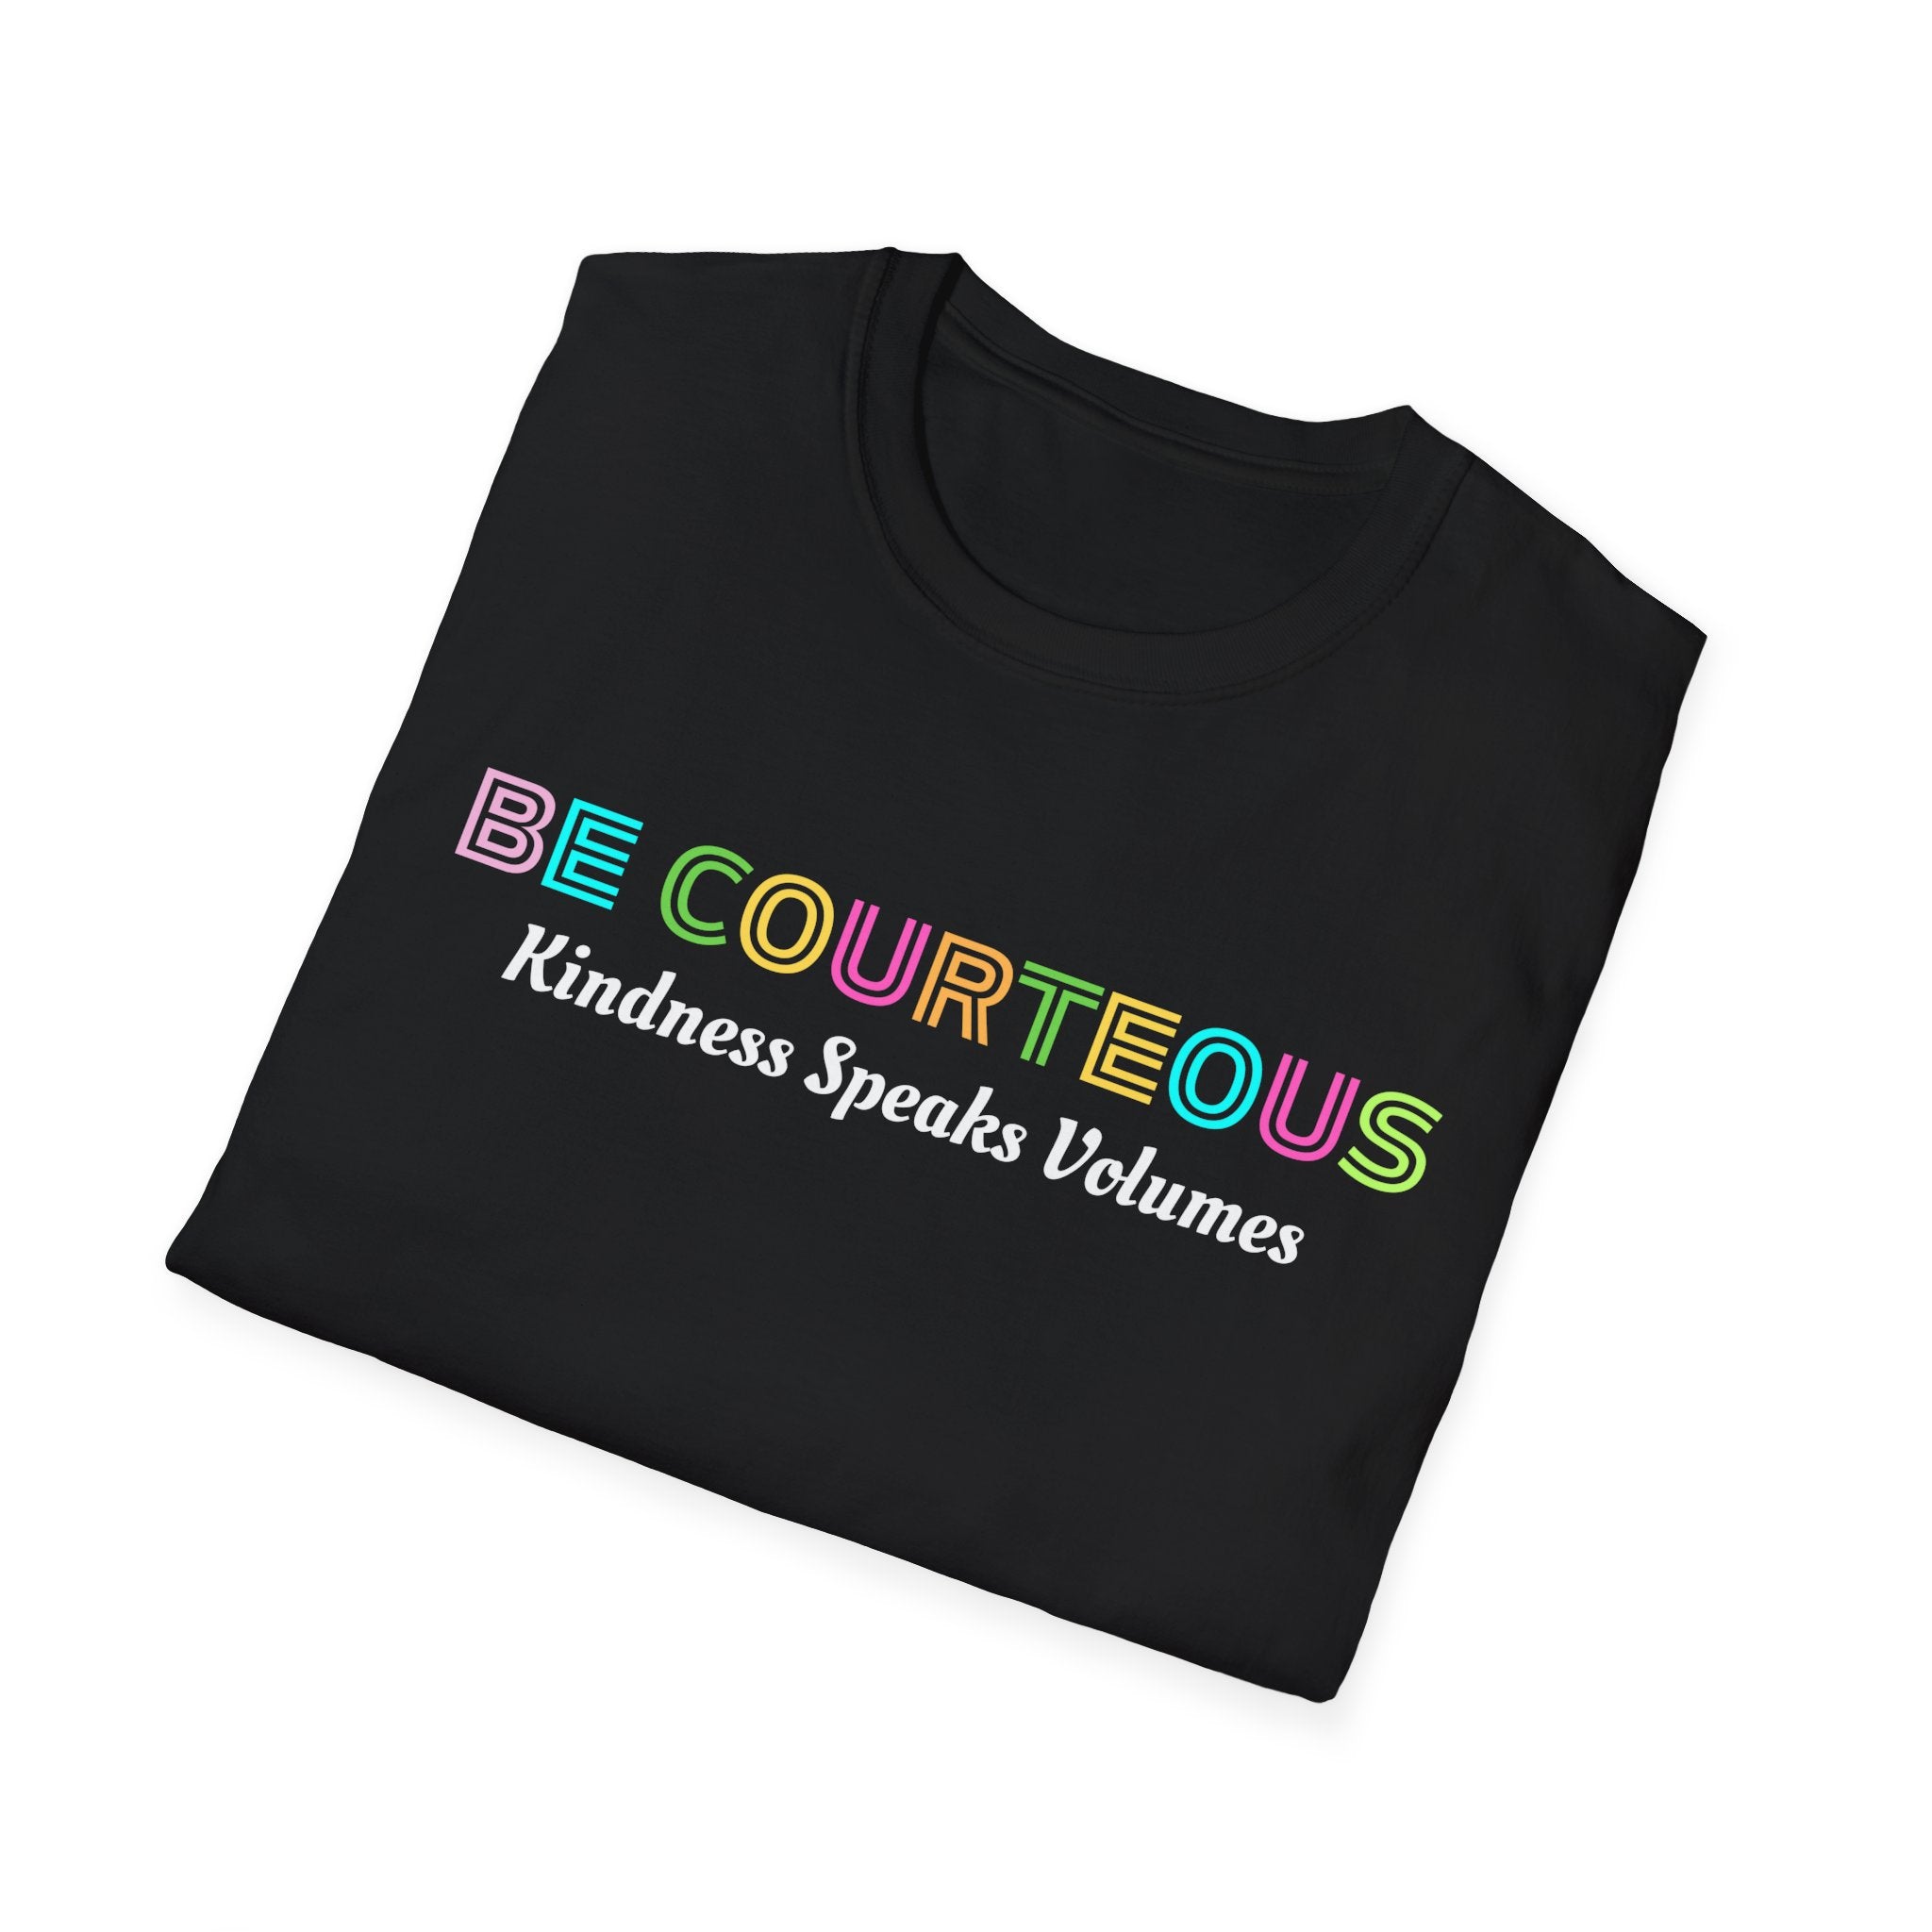 Be Courteous Unisex Softstyle T-shirt Inspirational Shirt, Retro Teacher T-shirt, Cute Teacher shirt, Kindergarten teacher, Teacher T-Shirt, Preschool Teacher